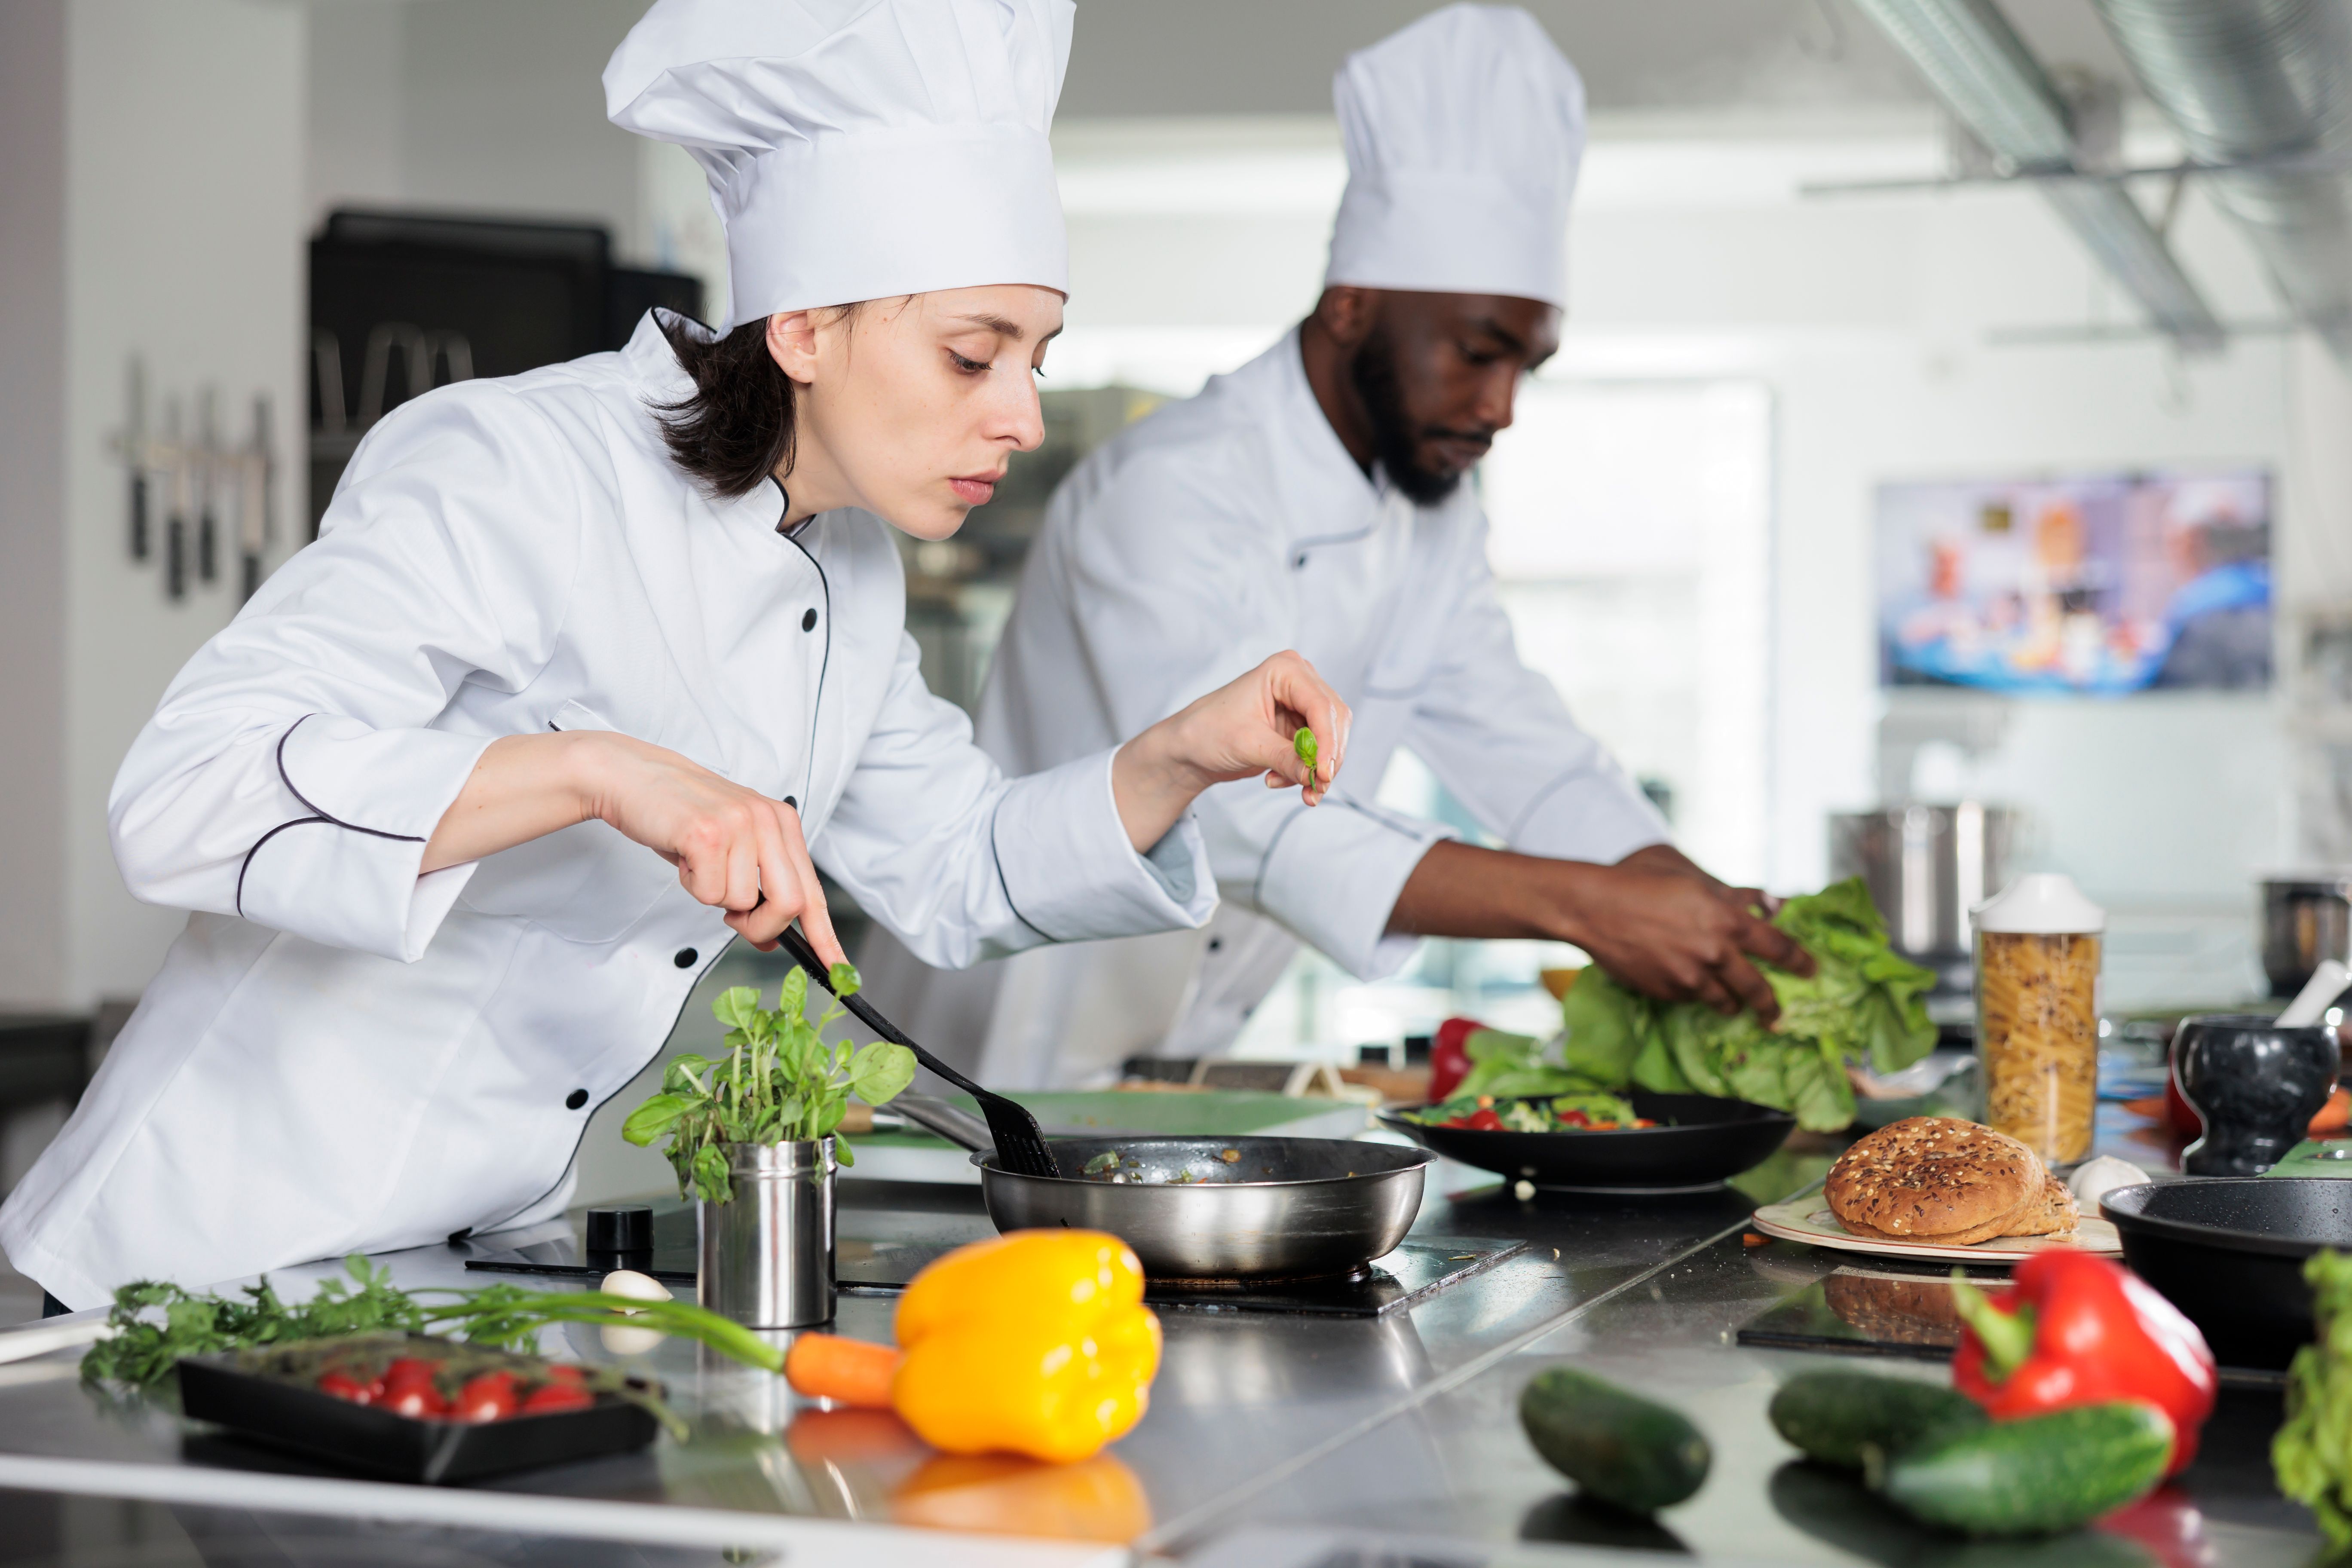 food-industry-worker-improving-gourmet-dish-taste-2022-08-14-00-58-46-utc.jpg